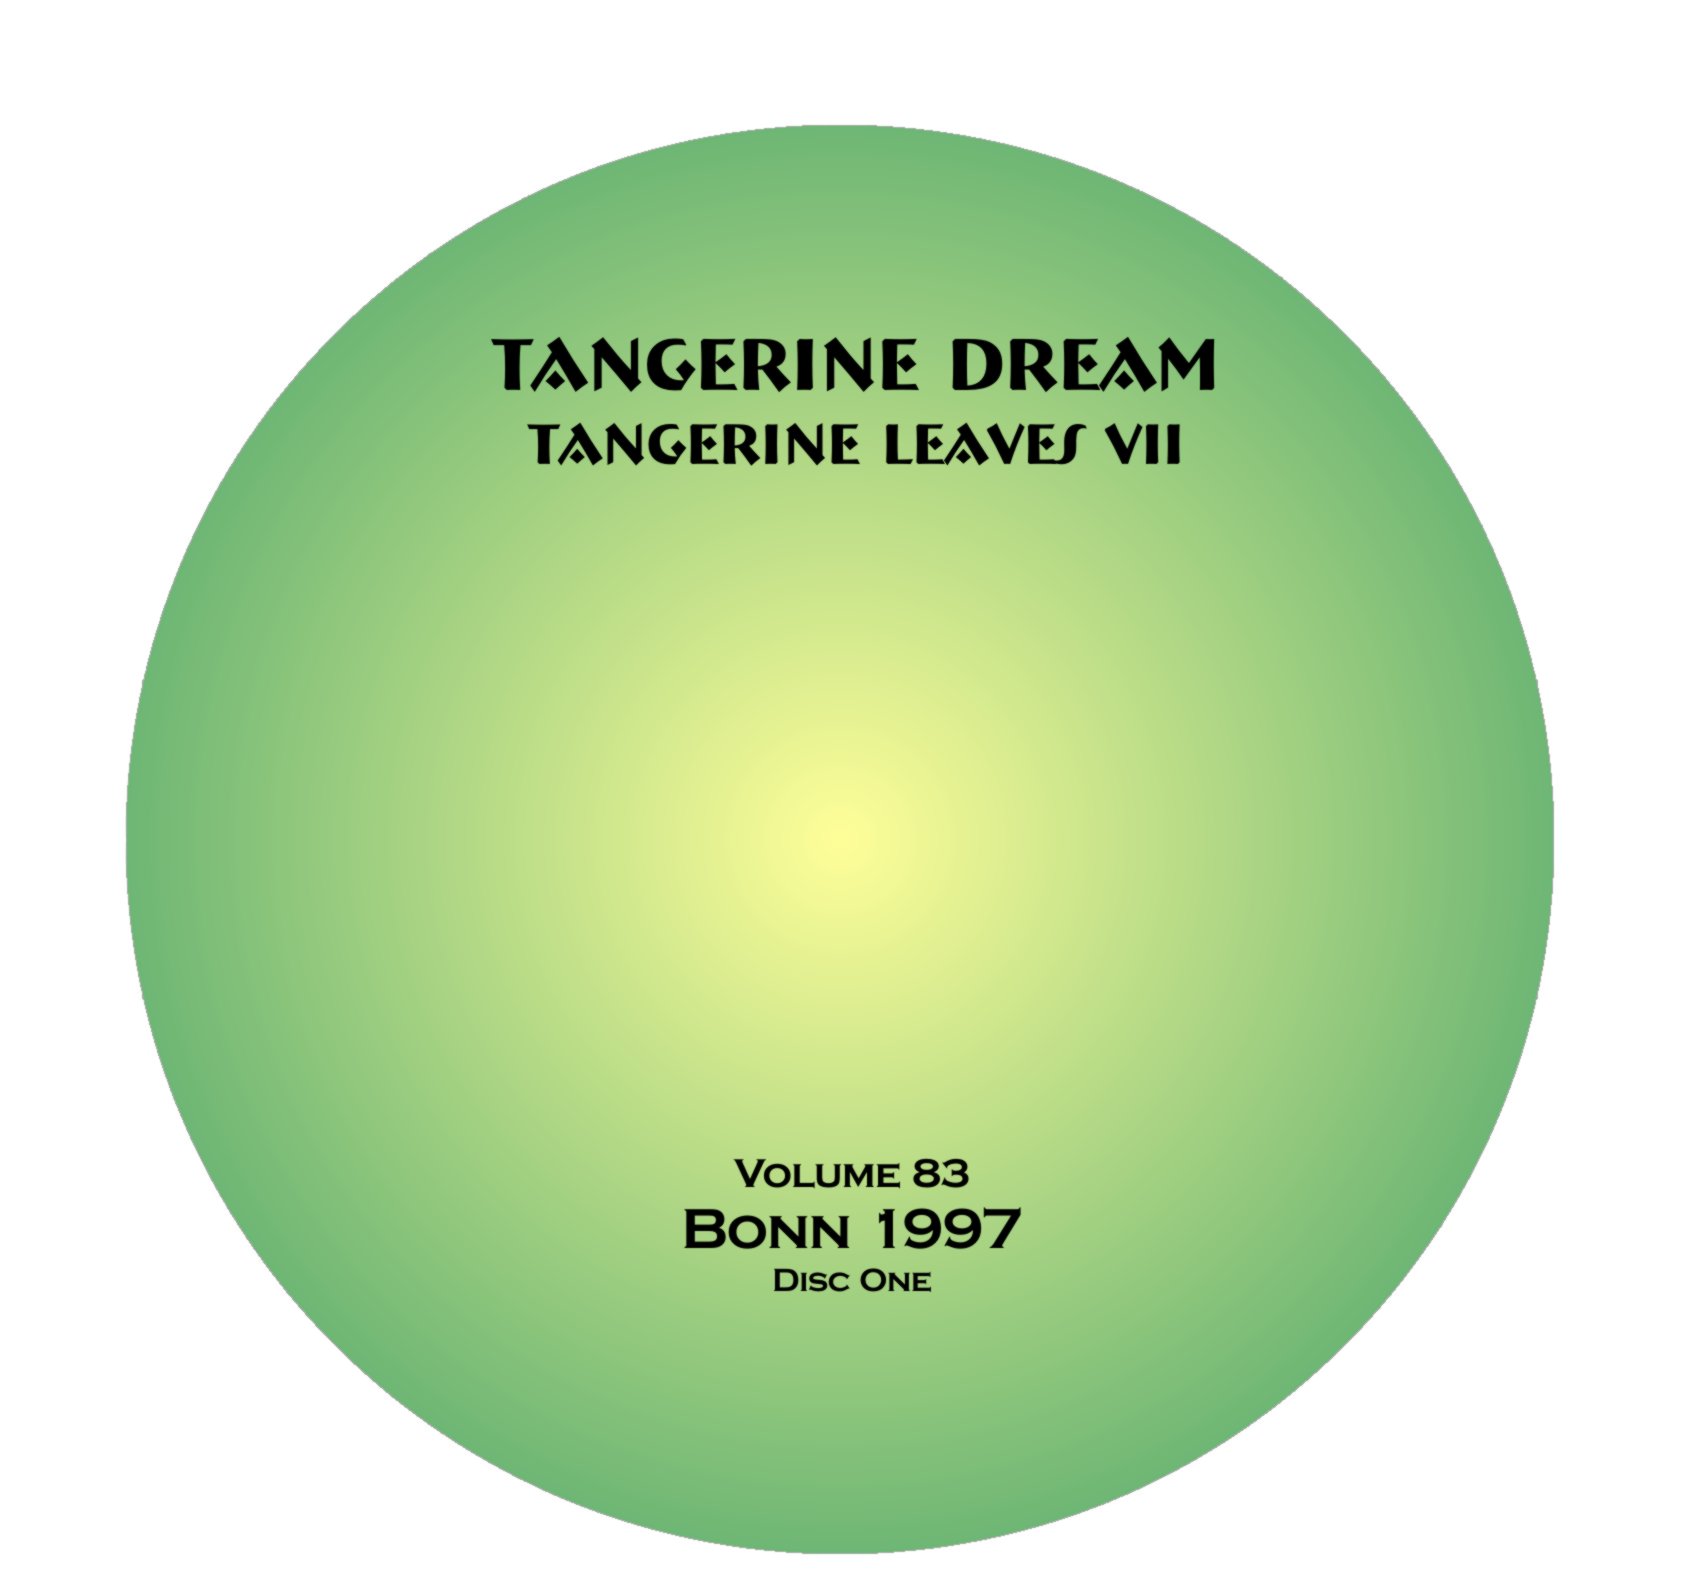 TangerineDream1997-04-11BeethovenhalleBonnGermany (2).jpg